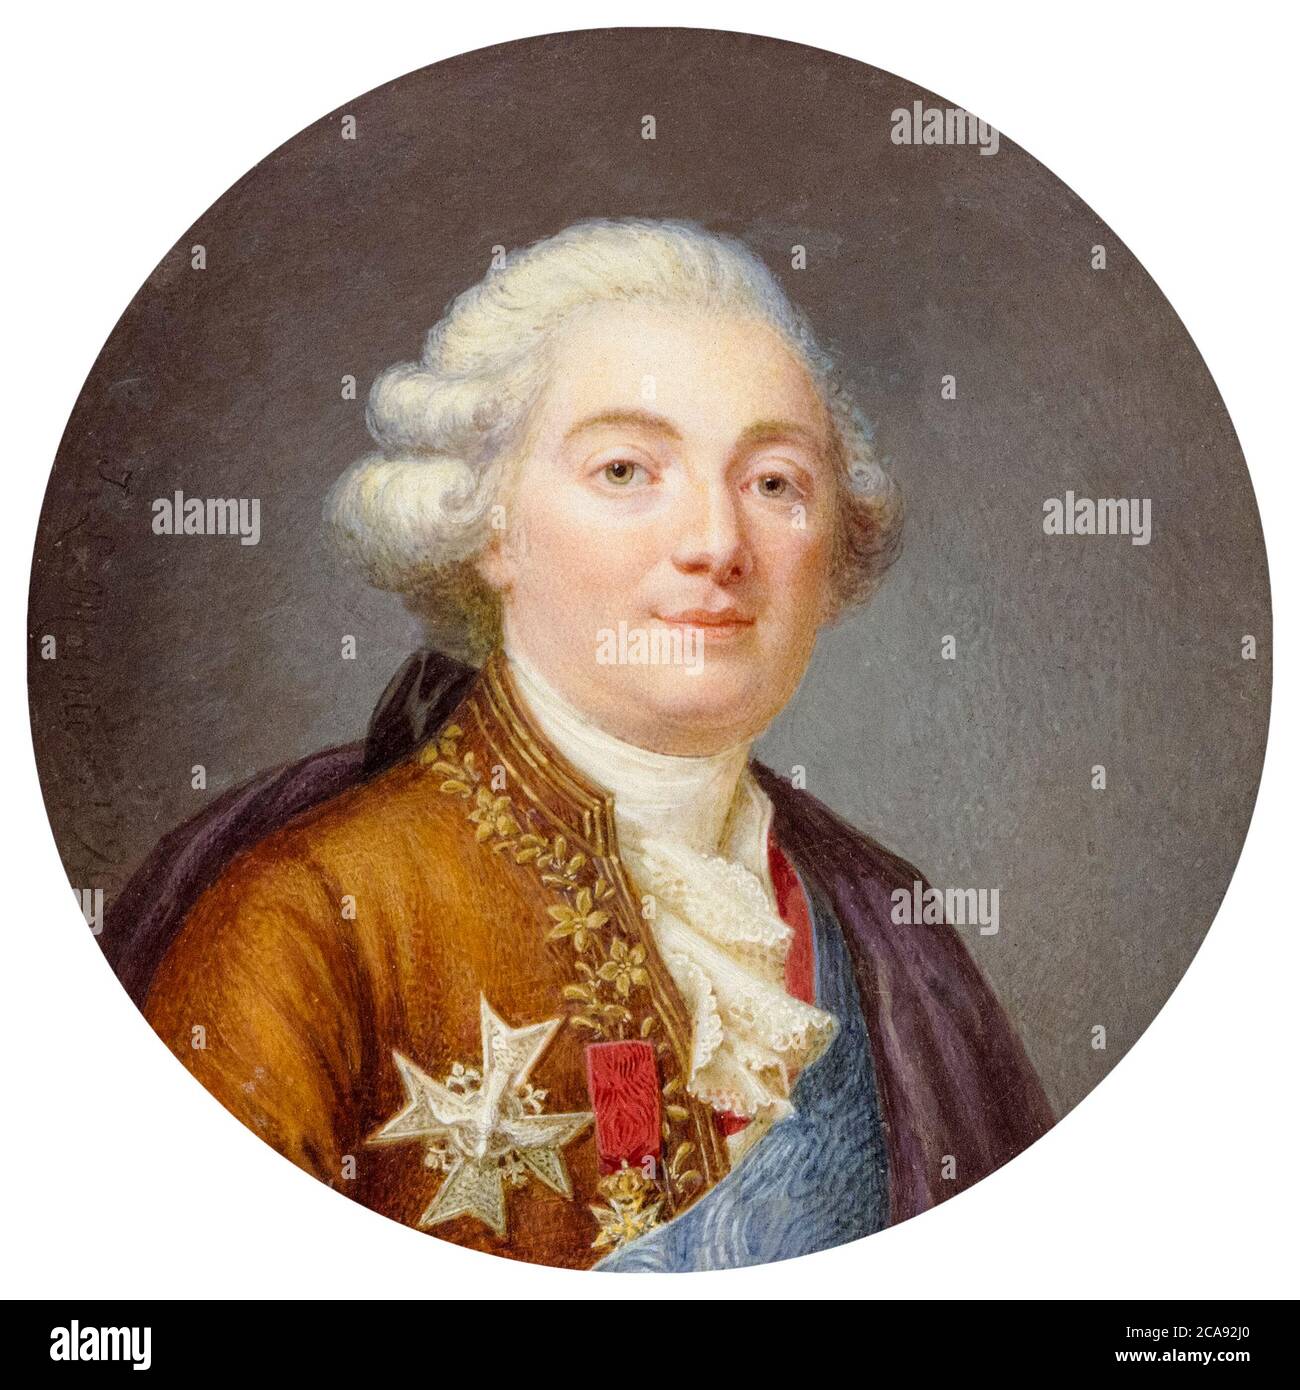 Louis XVI (1754-1793), King of France, portrait miniature by Jean Laurent Mosnier, 1790 Stock Photo